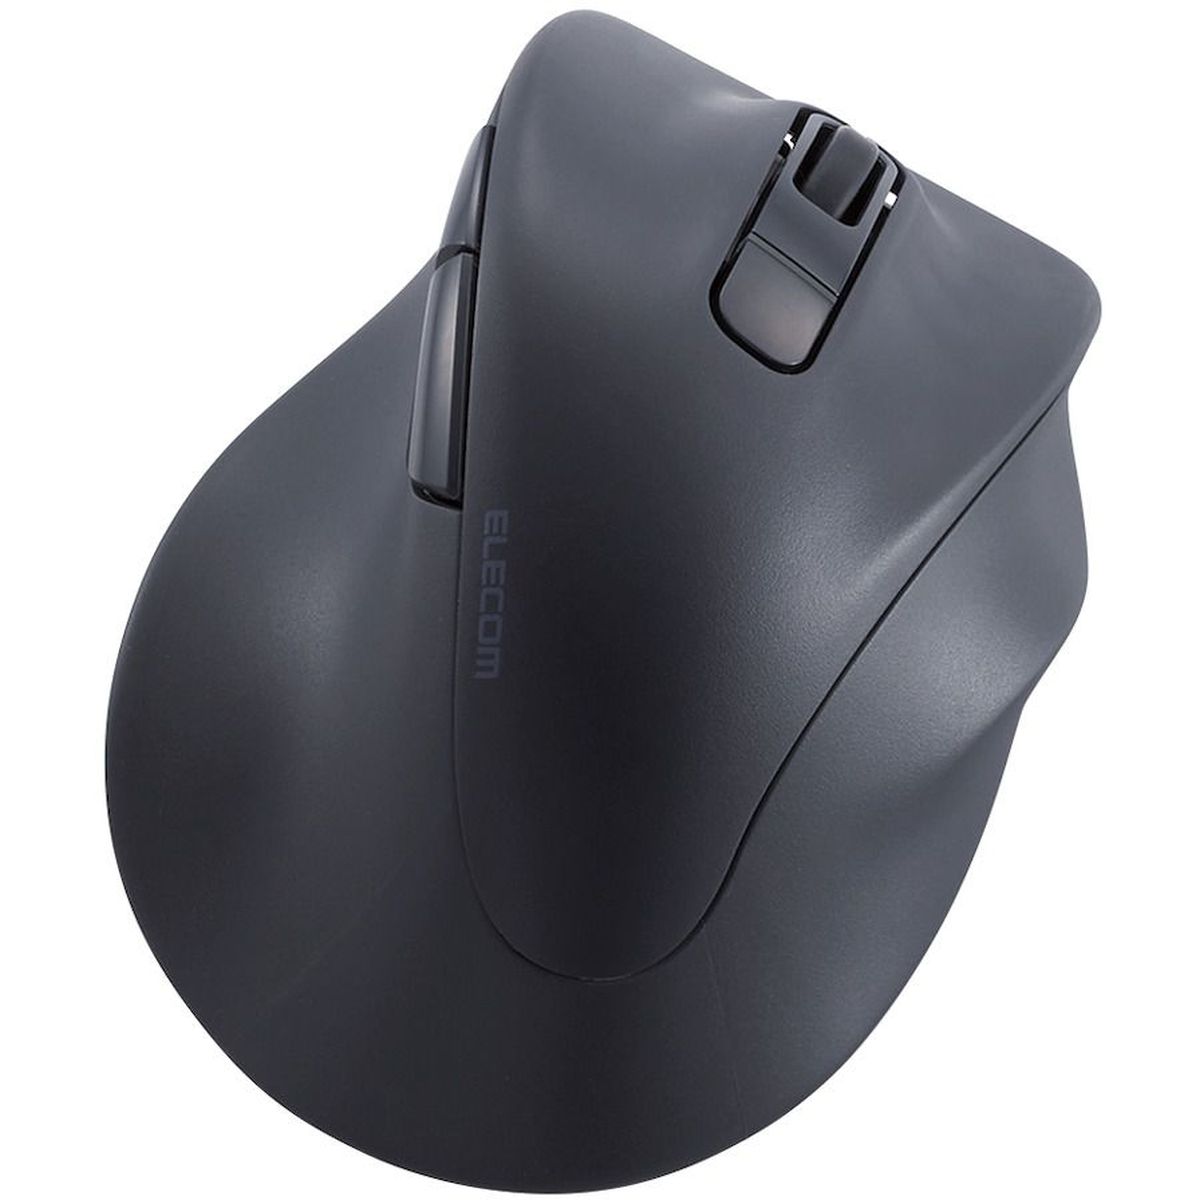 マウス/右手専用/Mサイズ/Bluetooth/5ボタン/ブラック